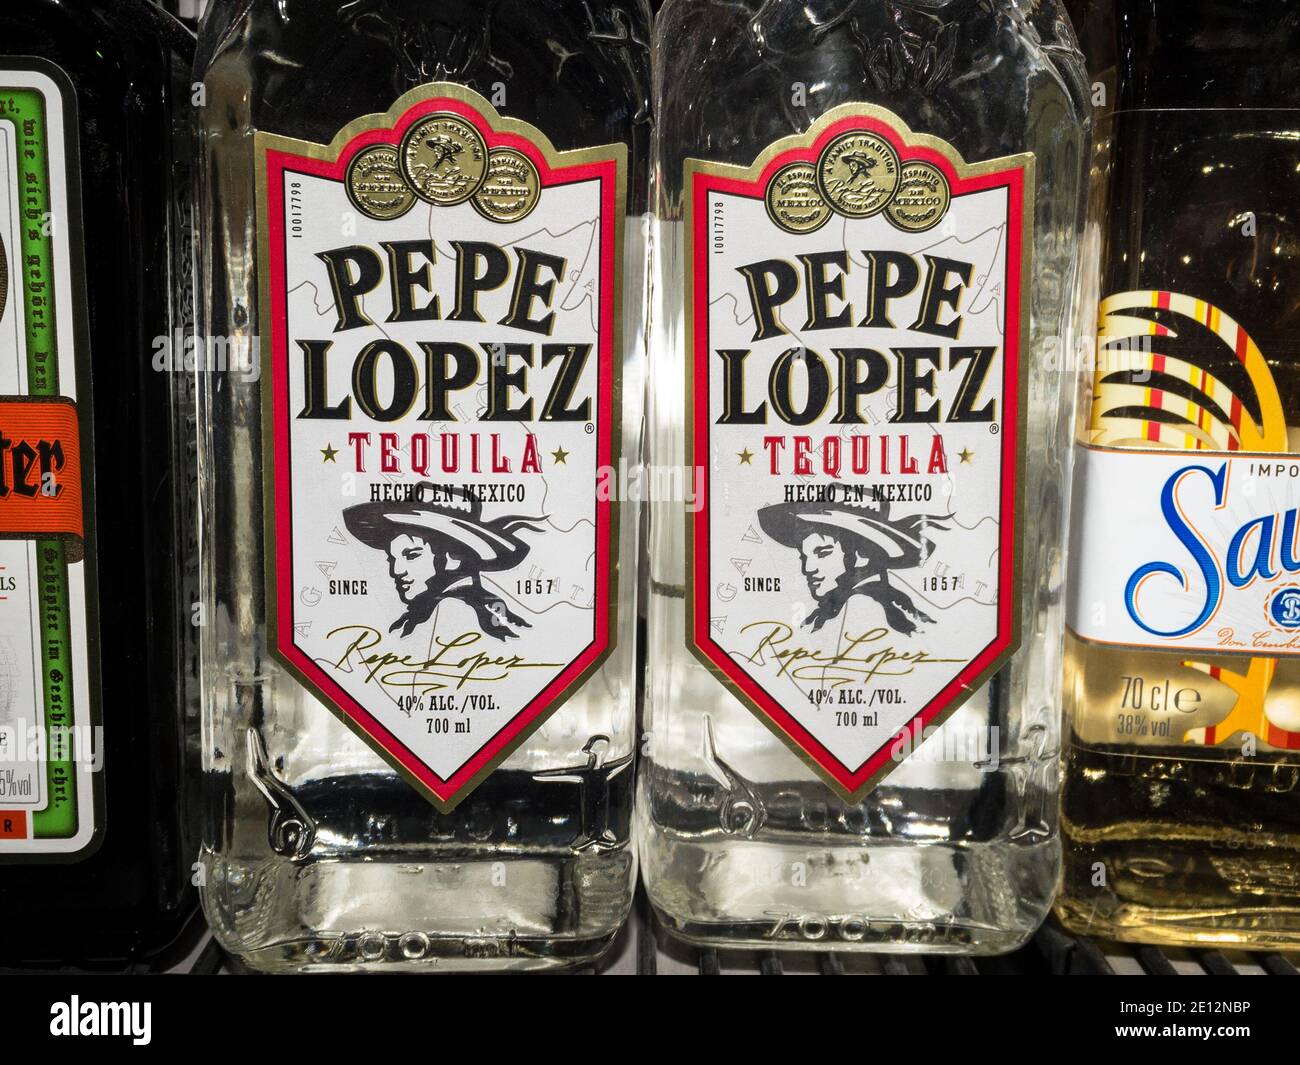 BELGRAD, SERBIEN - 18. DEZEMBER 2020: Tequila Pepe Lopez Logo auf einer ihrer Flaschen. Pepe Lopez ist eine mexikanische Marke von Tequila und anderen mexiko-Alkoh Stockfoto